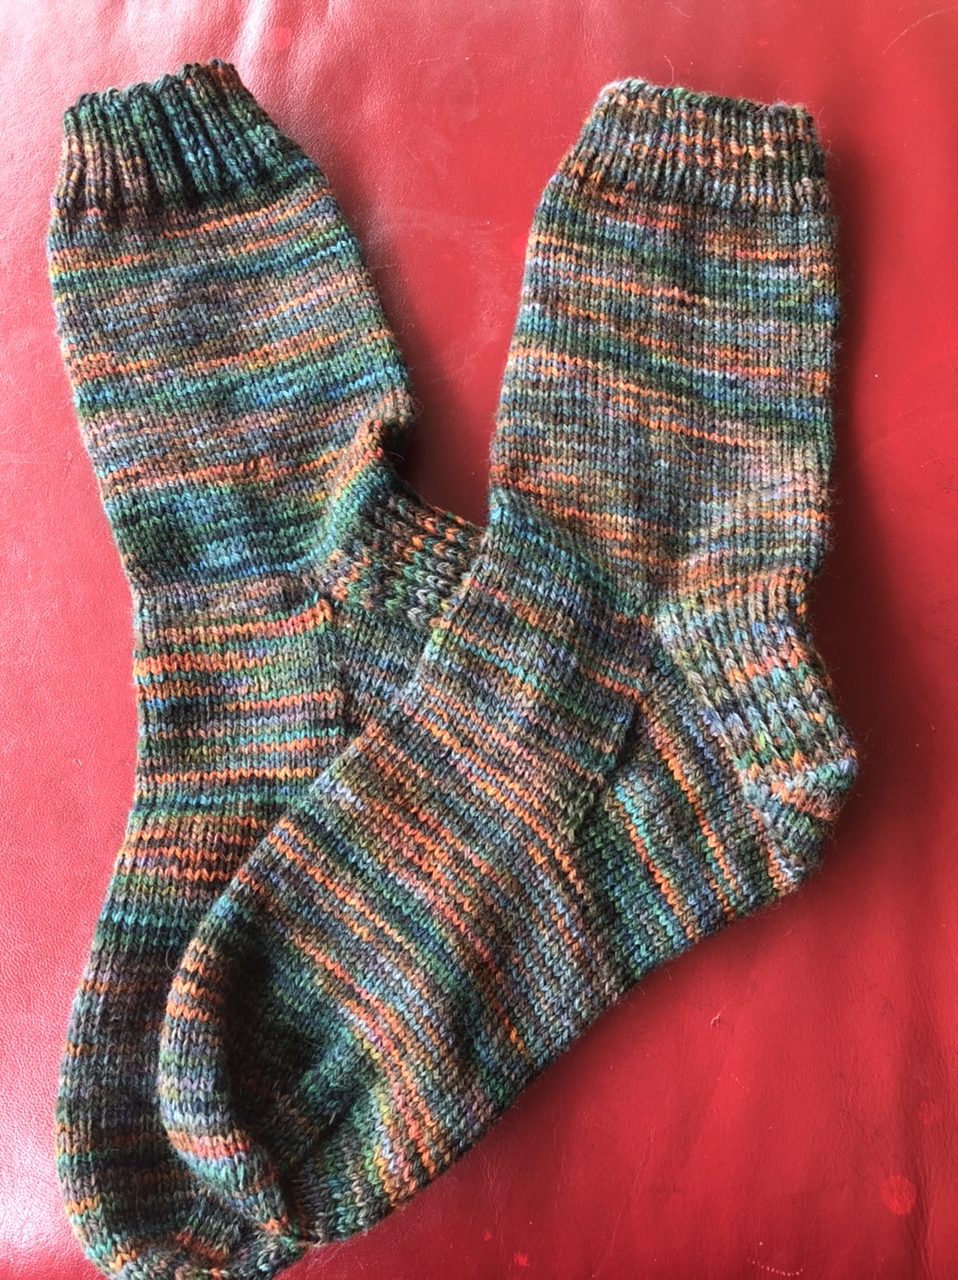 Pine Needle Socks – The Knitting Doctor What Size Knitting Needles For Socks